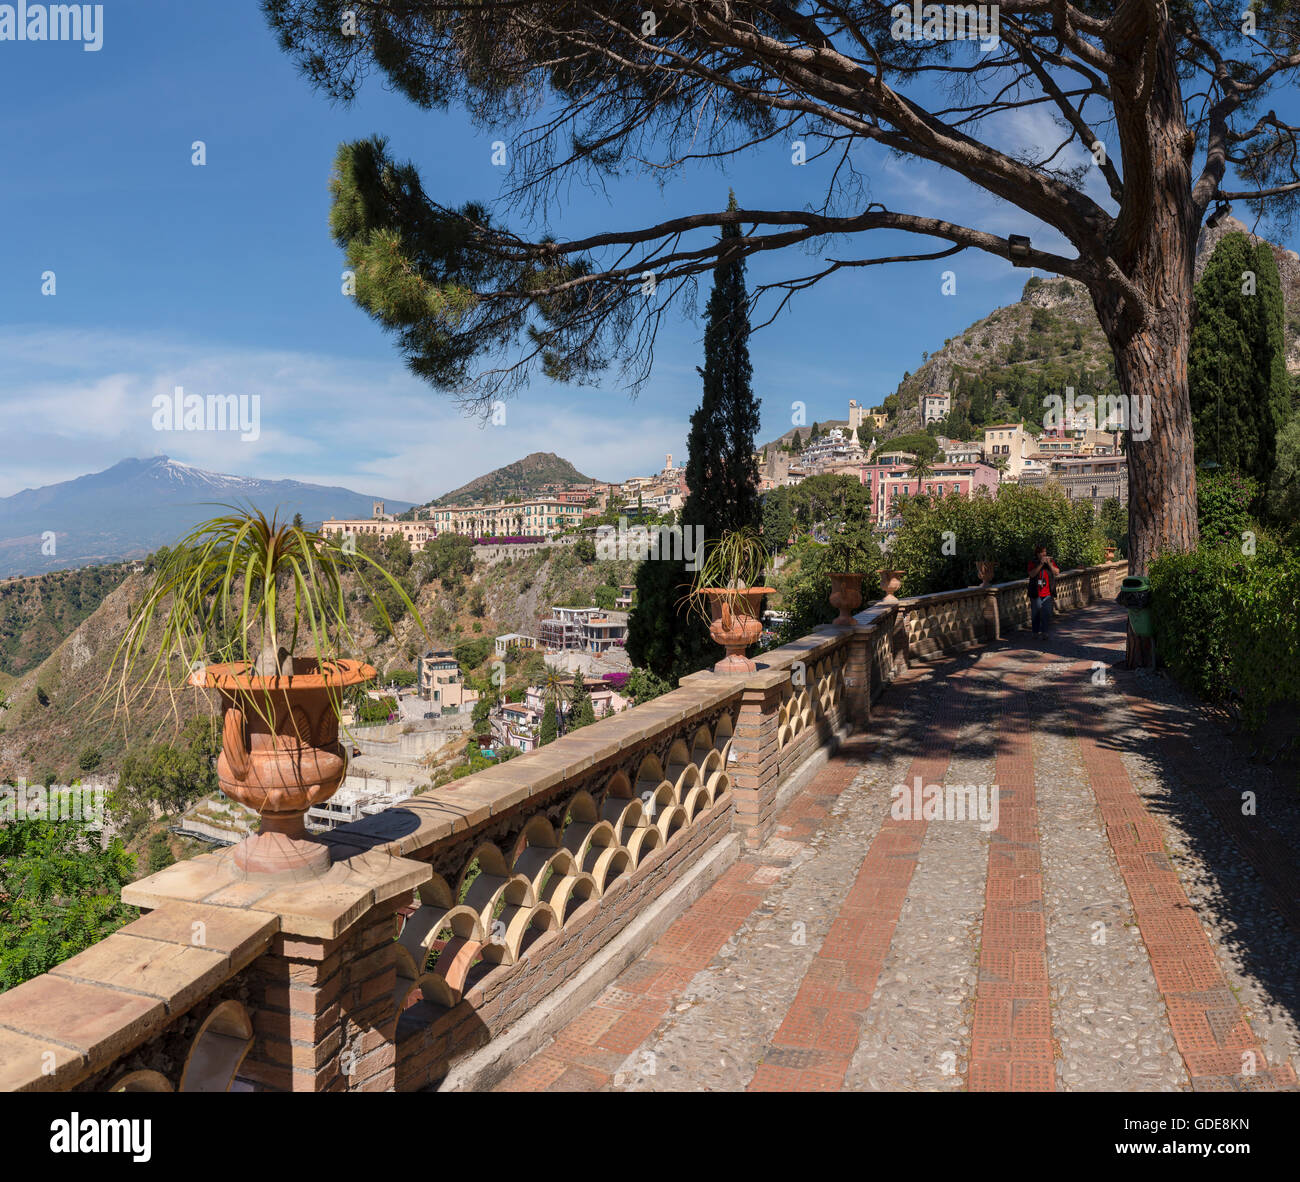 City park Giardini della Villa Comunale,view at mountain Etna Stock Photo